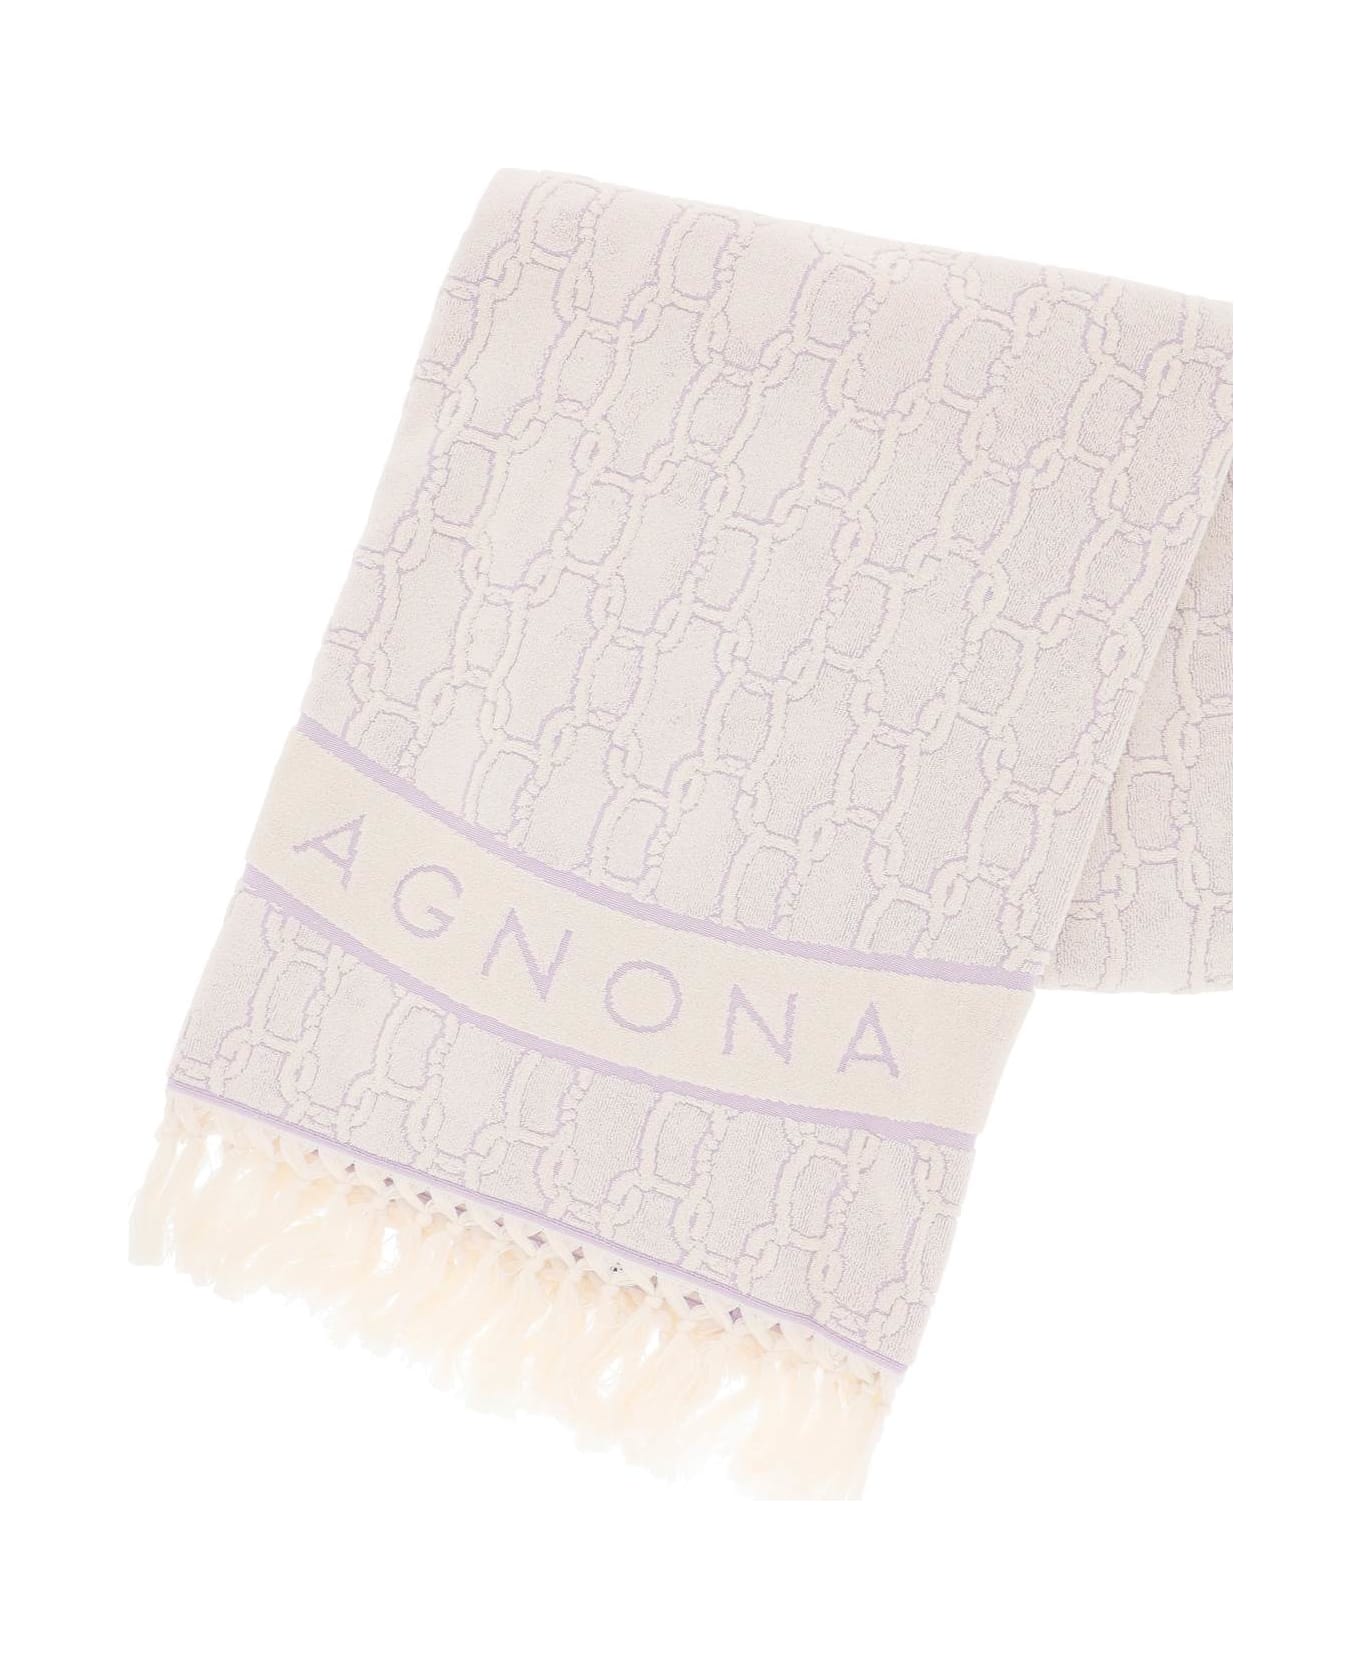 Agnona 'chain' Beach Towel - MALVA (White)